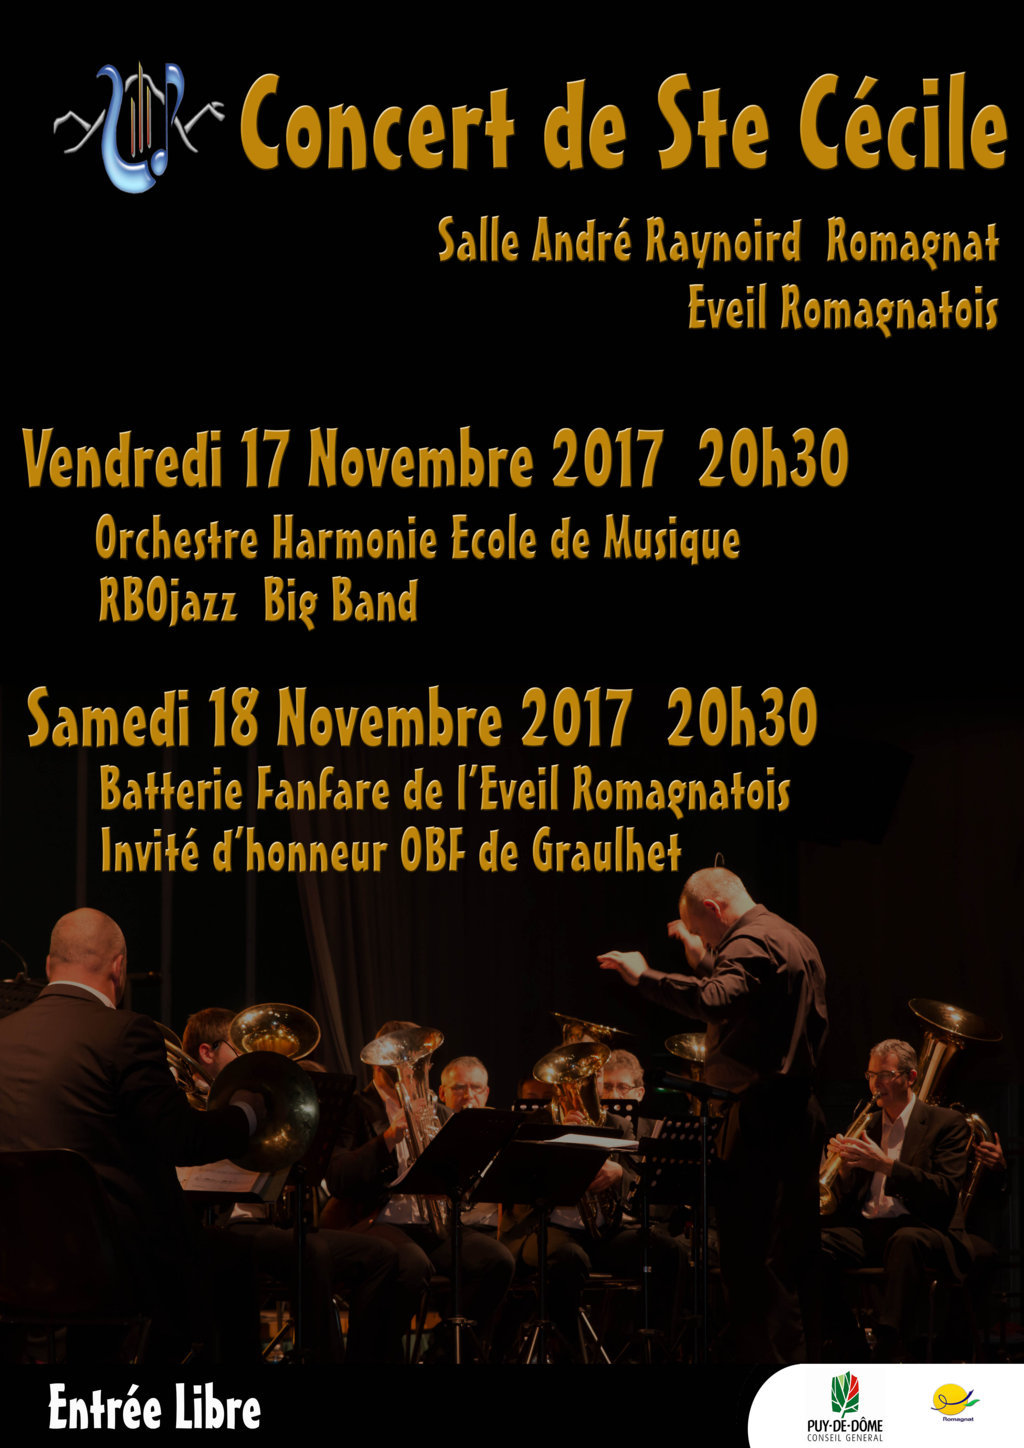 Concerts Sainte Cécile 2017 à Romagnat Concert-Ste-Cecile-2017-Web